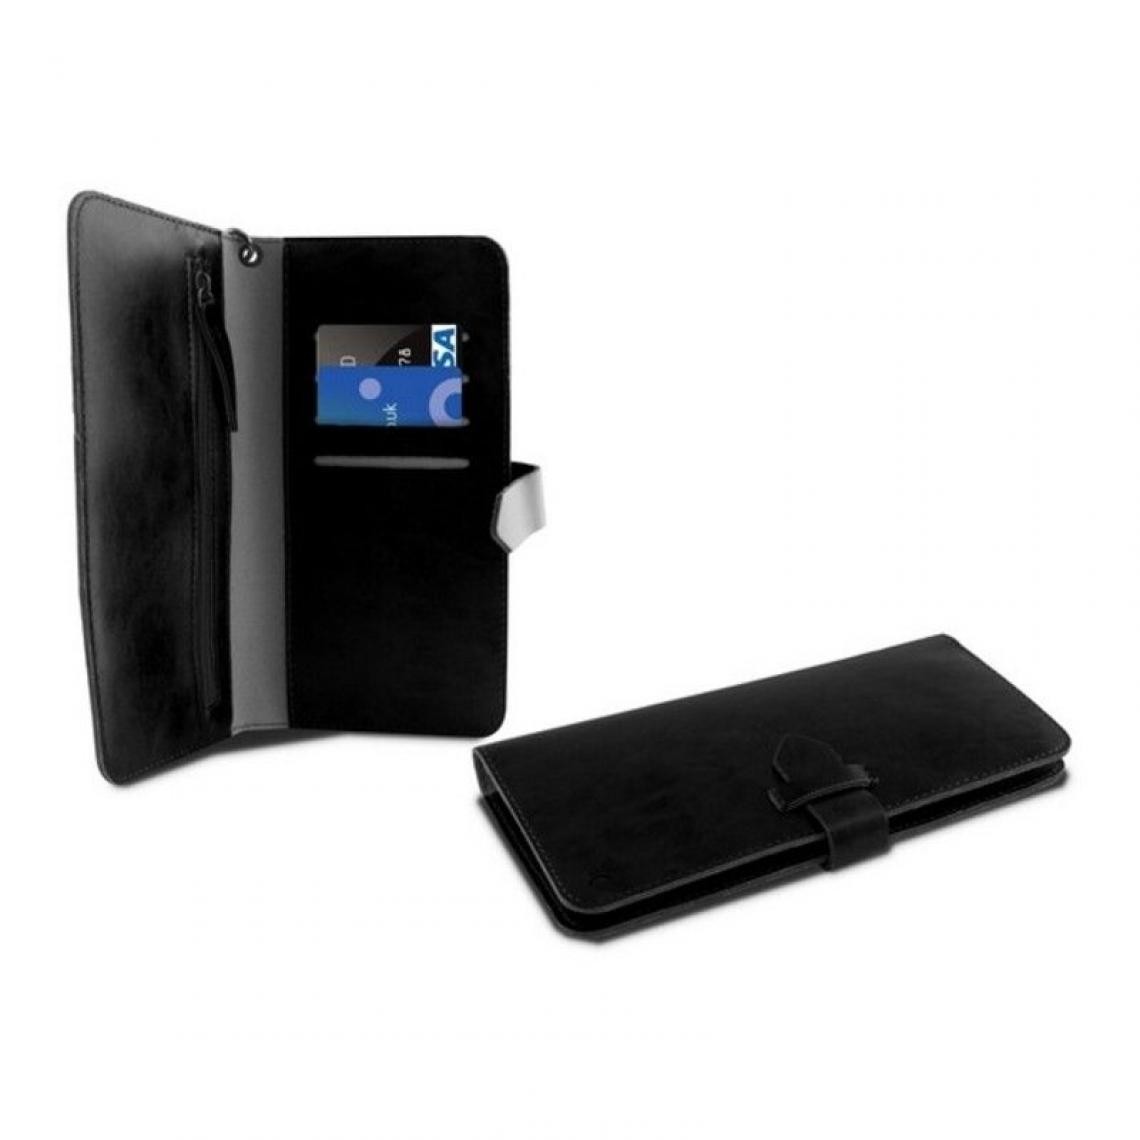 Inconnu - Housse Universelle pour Mobile Livre Smartphone 5,5`` Wallet Noir - Coque, étui smartphone